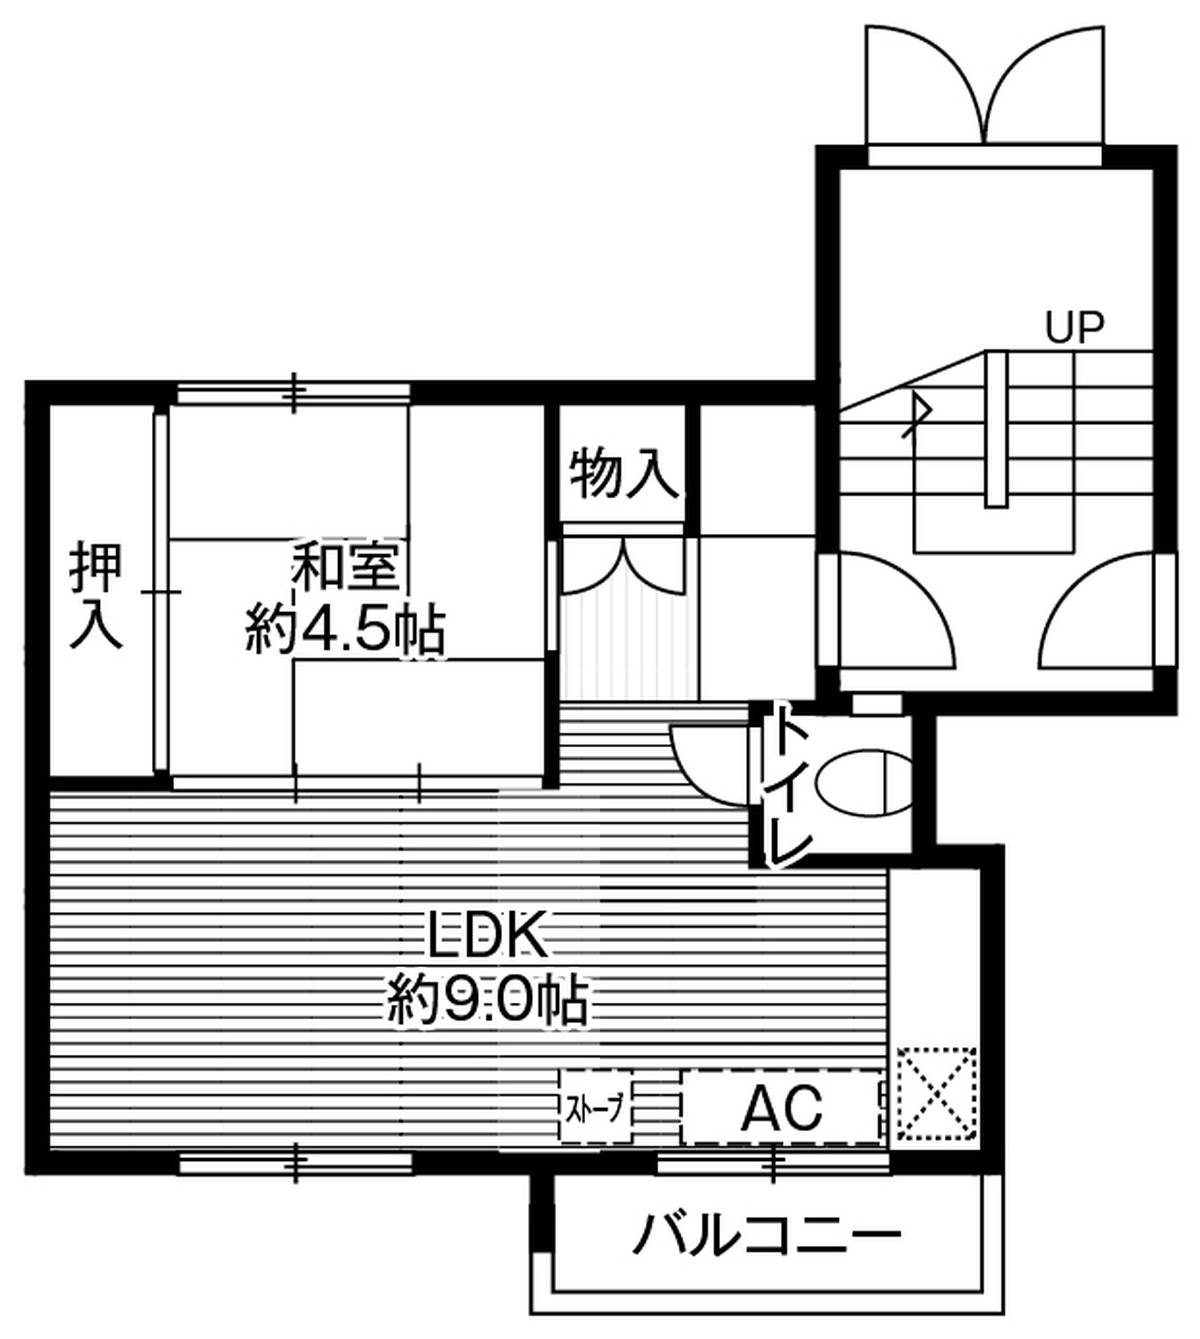 Sơ đồ phòng 2K của Village House Zenibako ở Otaru-shi